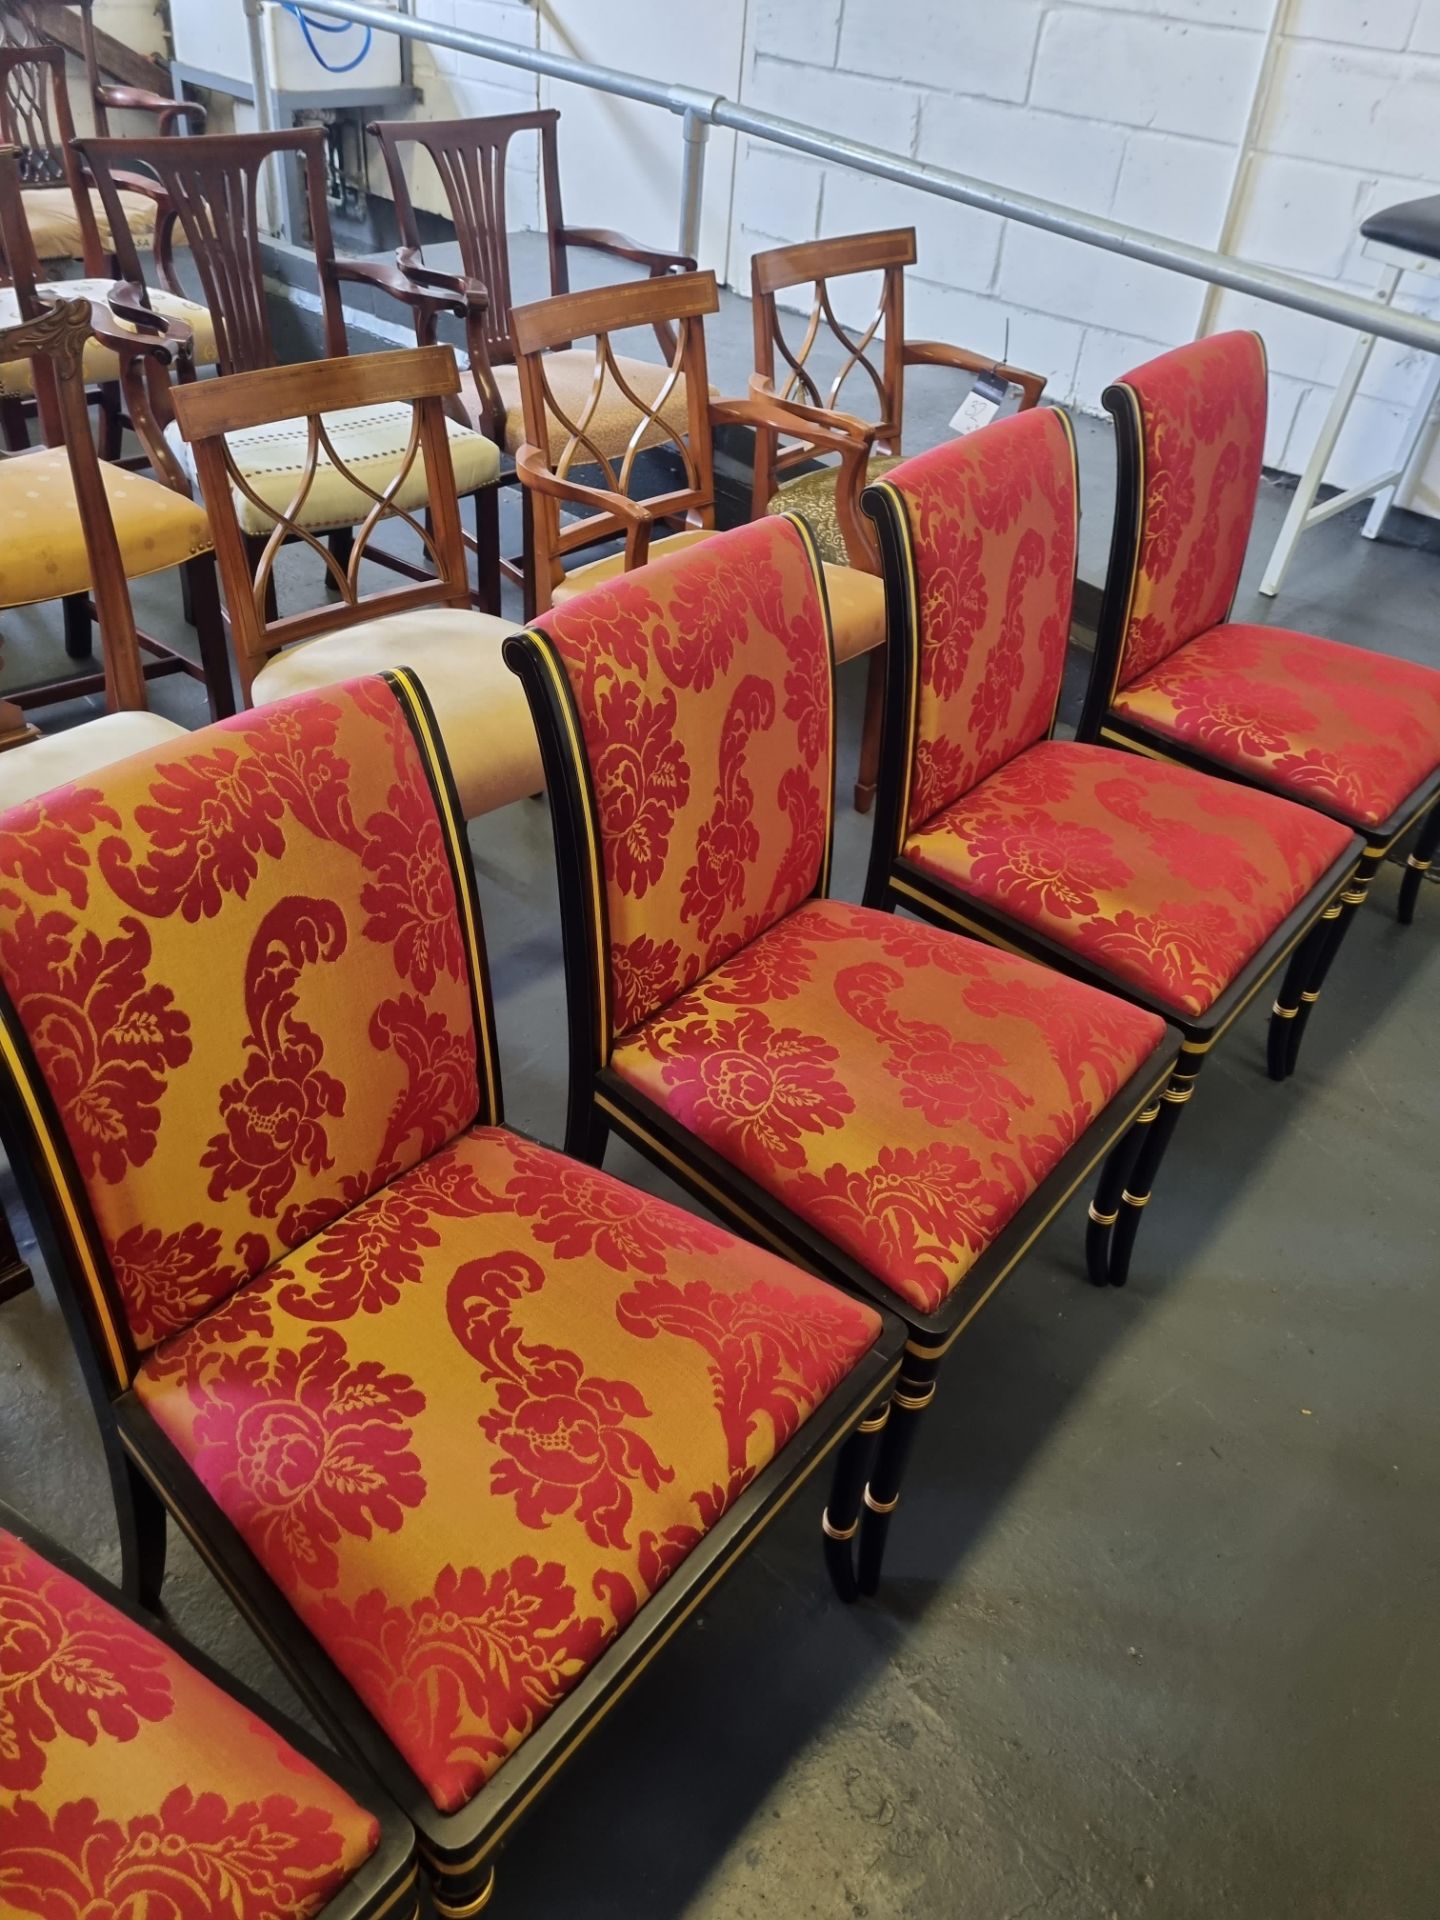 4 X Arthur Brett Ebonised & Gilt Side Chair In Bespoke Red Upholstery Regency-Style Upholstered Back - Image 3 of 3